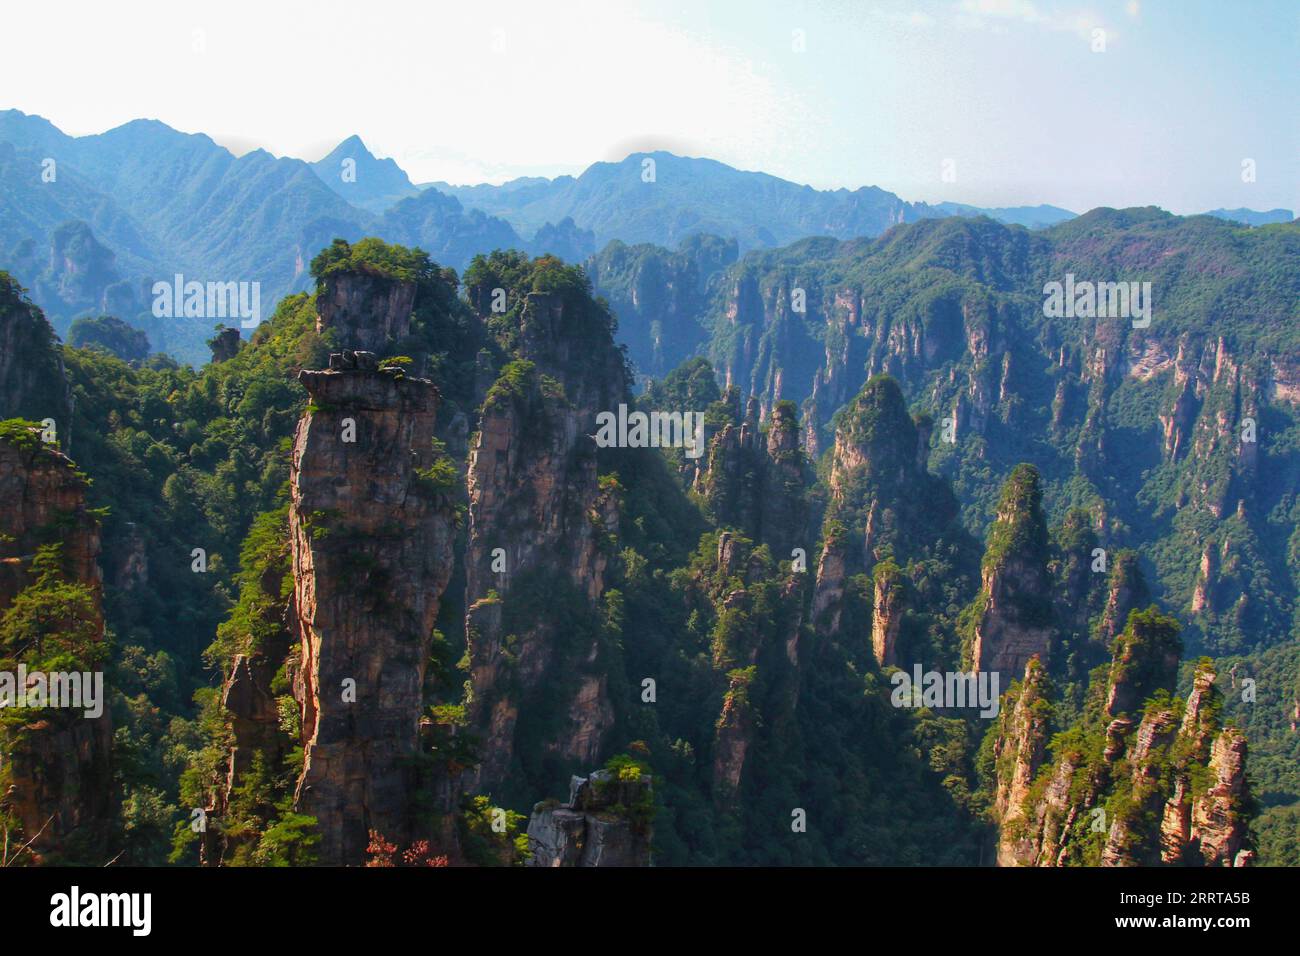 Cattura l'essenza mozzafiato delle montagne imponenti e taglienti della Cina, che ricordano i paesaggi mozzafiato del film Avatar. Foto Stock